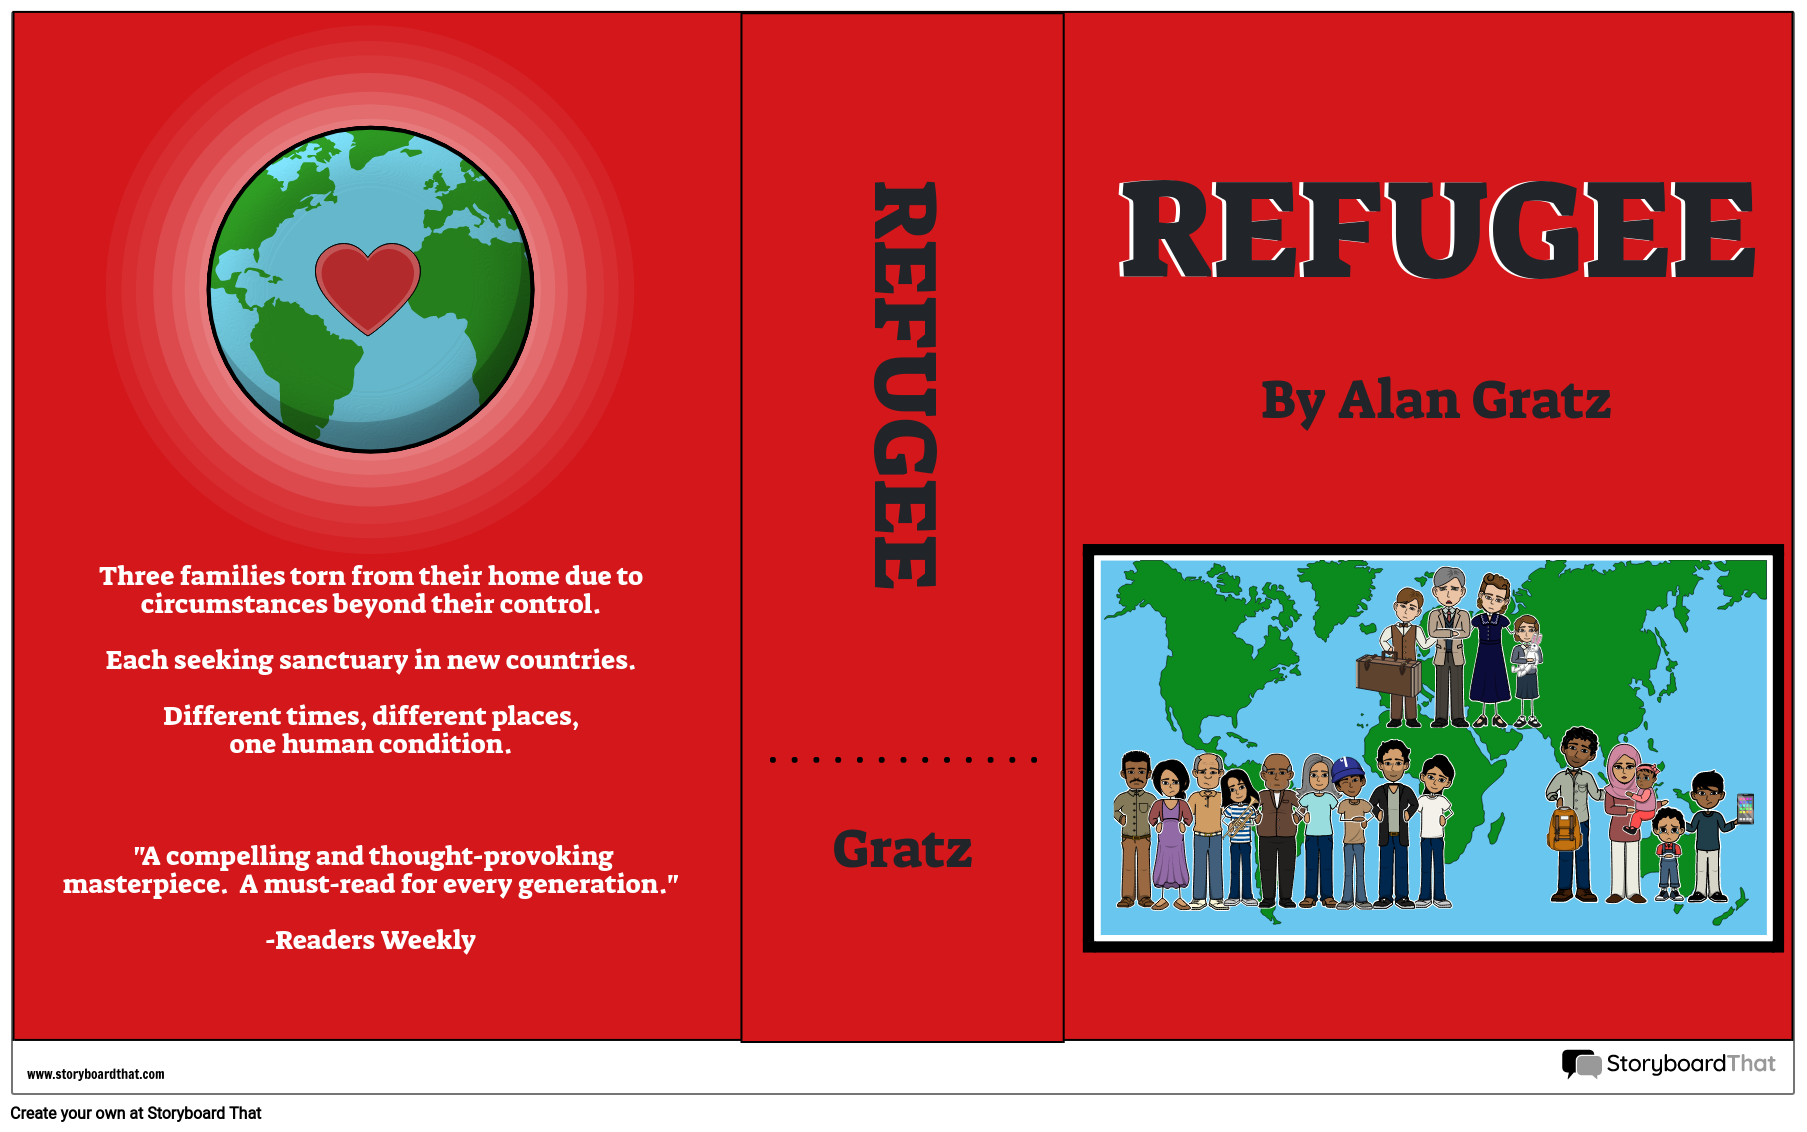 Refugee Book Cover